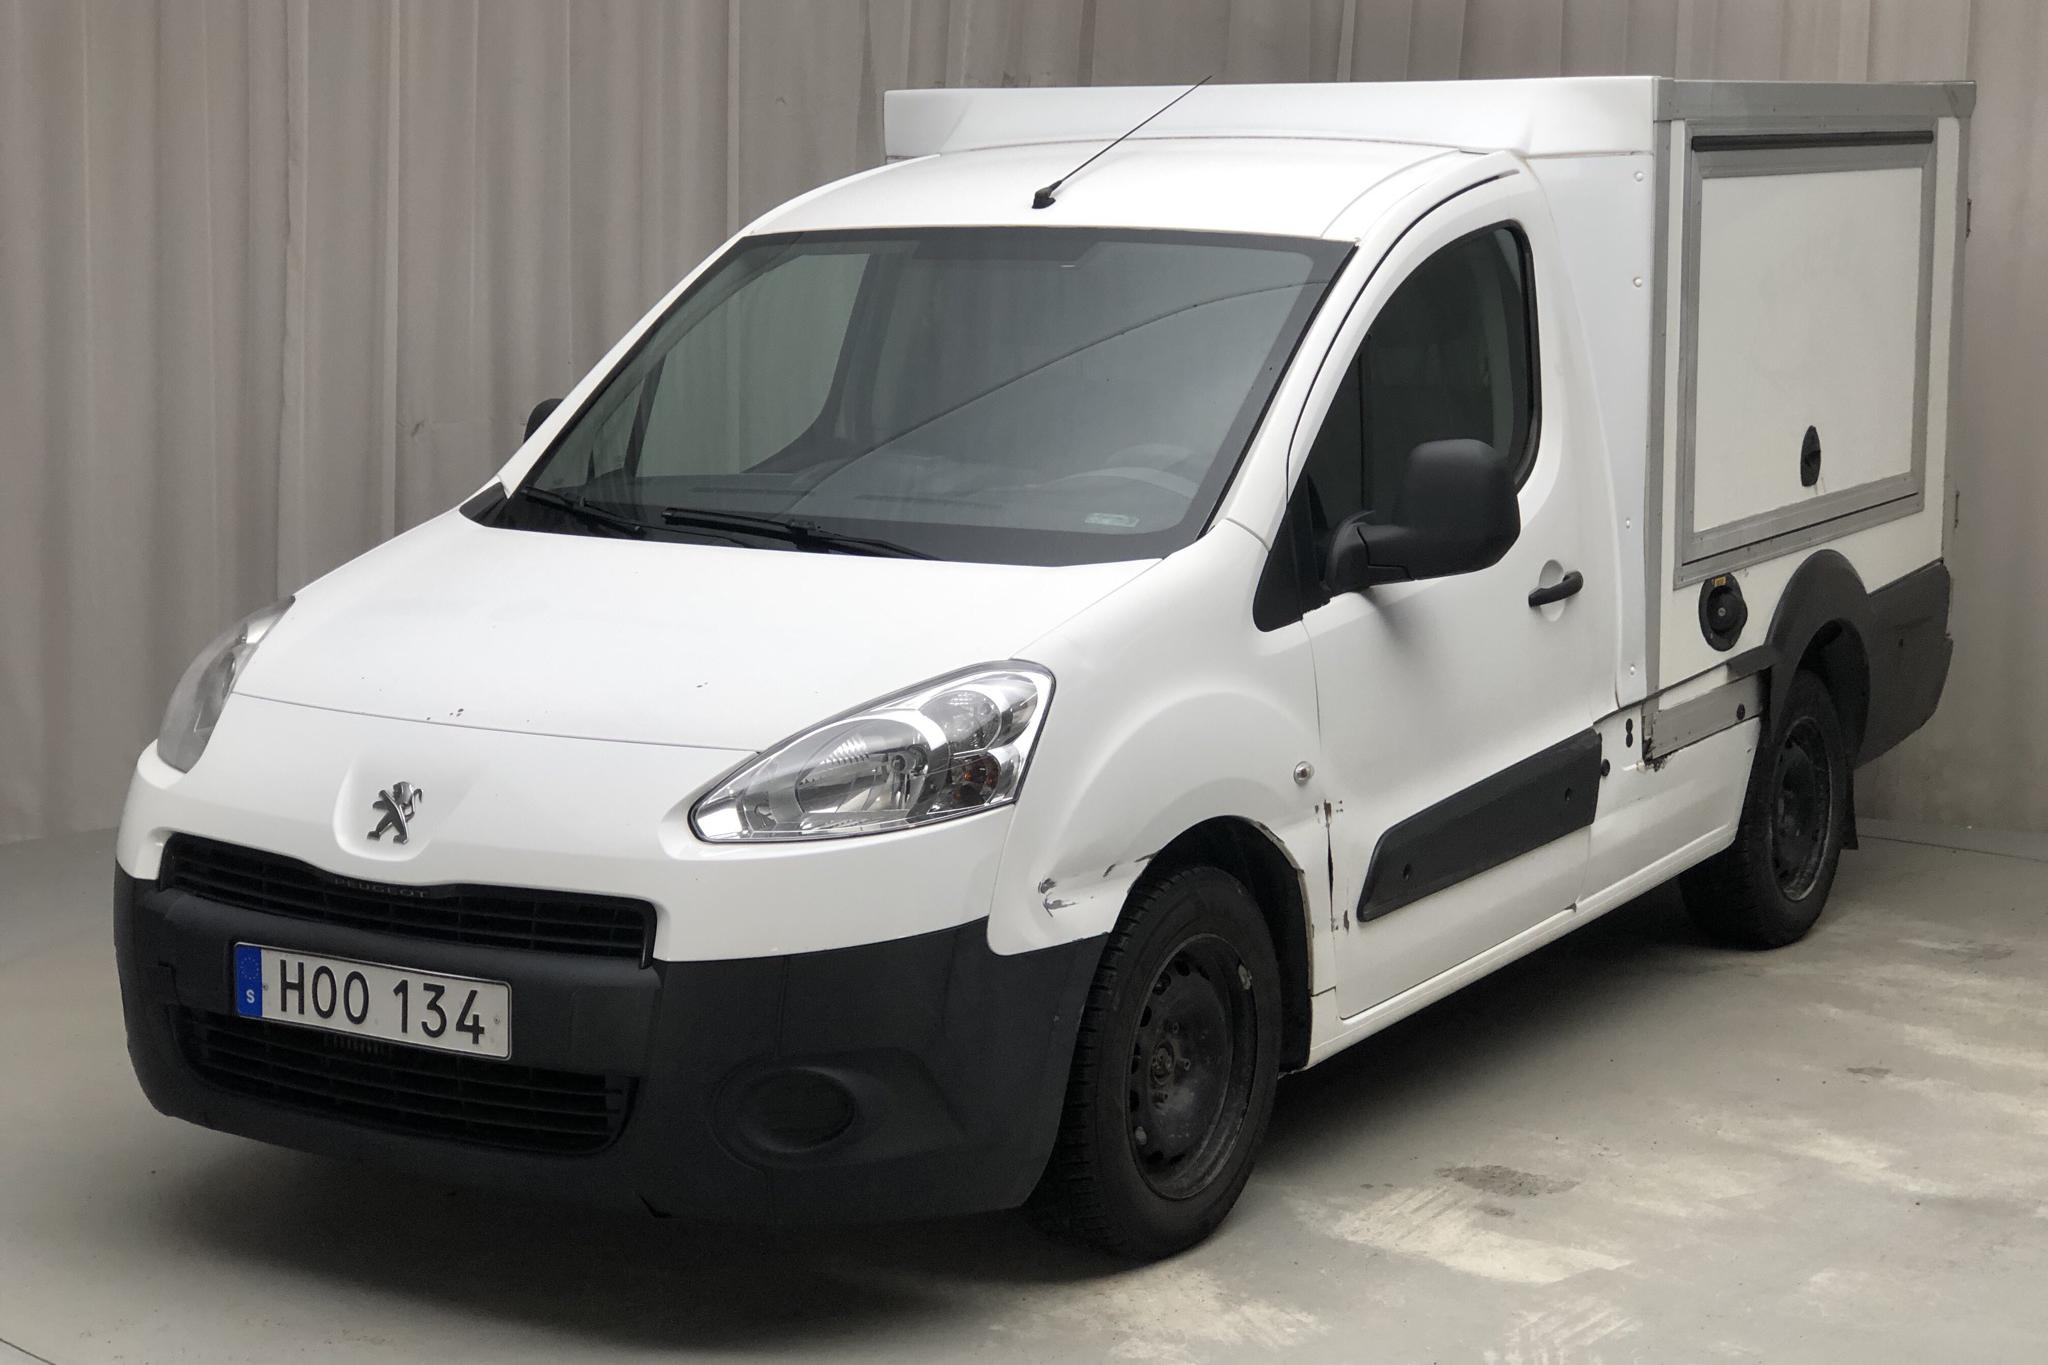 Peugeot Partner 1.6 HDI (90hk) - 158 740 km - Manual - white - 2015